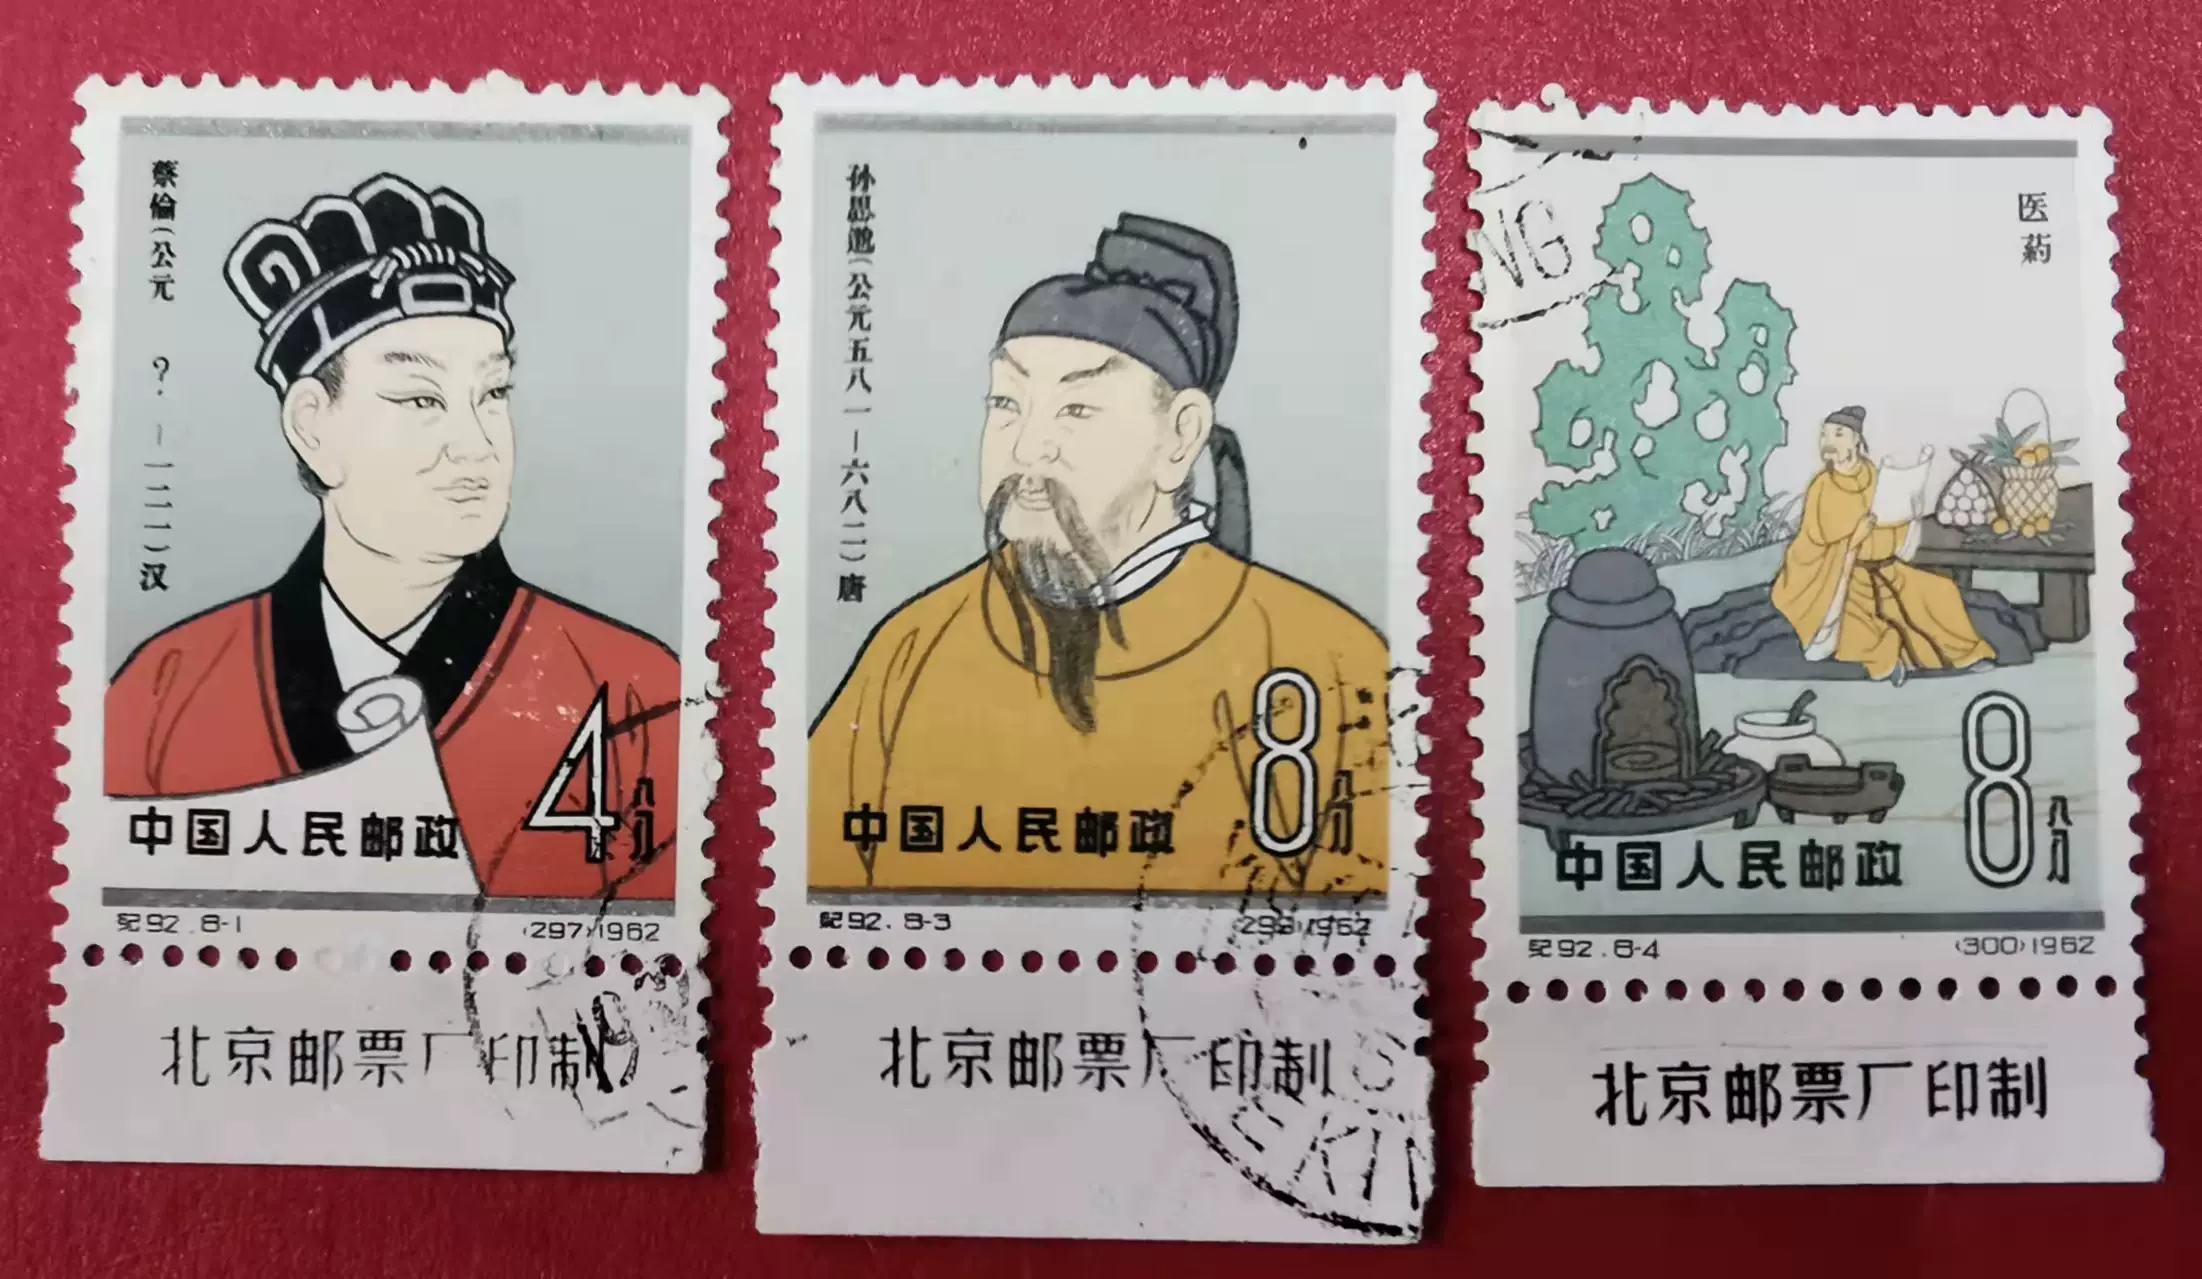 紀92中國古代科學家(第二組)8-1、8-3、8-4下廠銘蓋銷郵票實物圖-Taobao